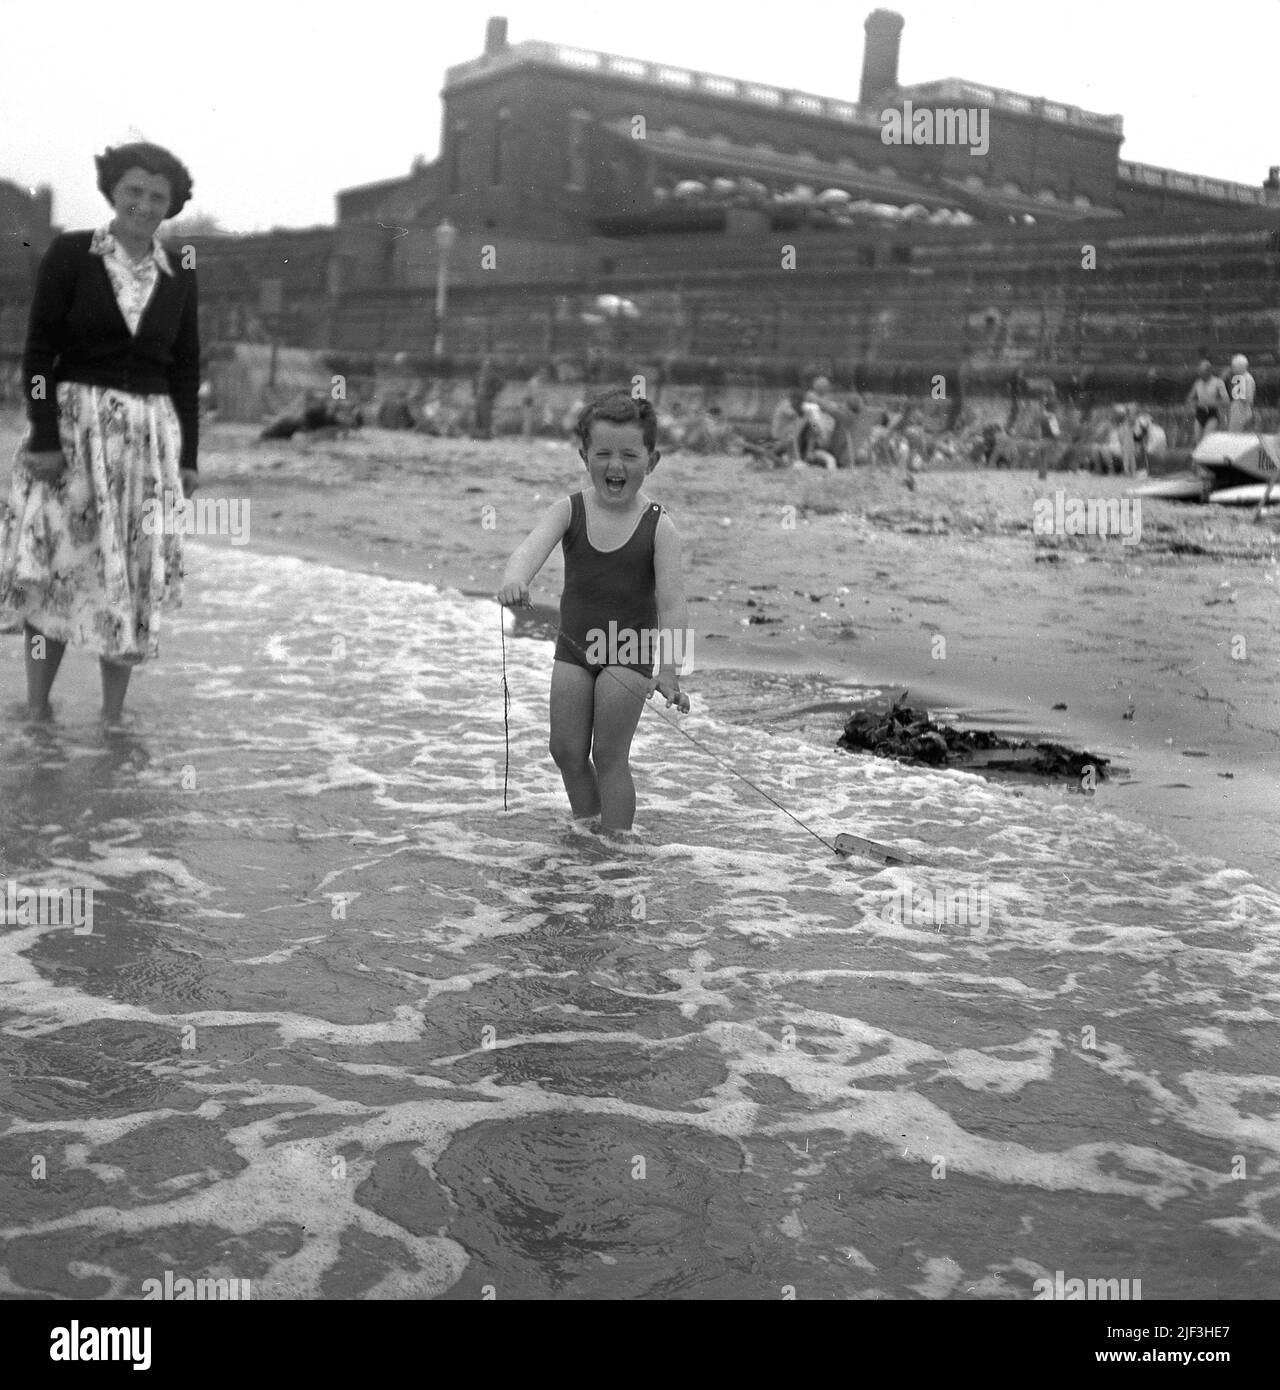 1953, historique, une mère avec son jeune fils dans les eaux peu profondes du bord de mer, avec le petit garçon debout tenant la corde attachée à son bateau en bois jouet qu'il tire à travers l'eau, Margate, Kent, Angleterre, Royaume-Uni. Banque D'Images